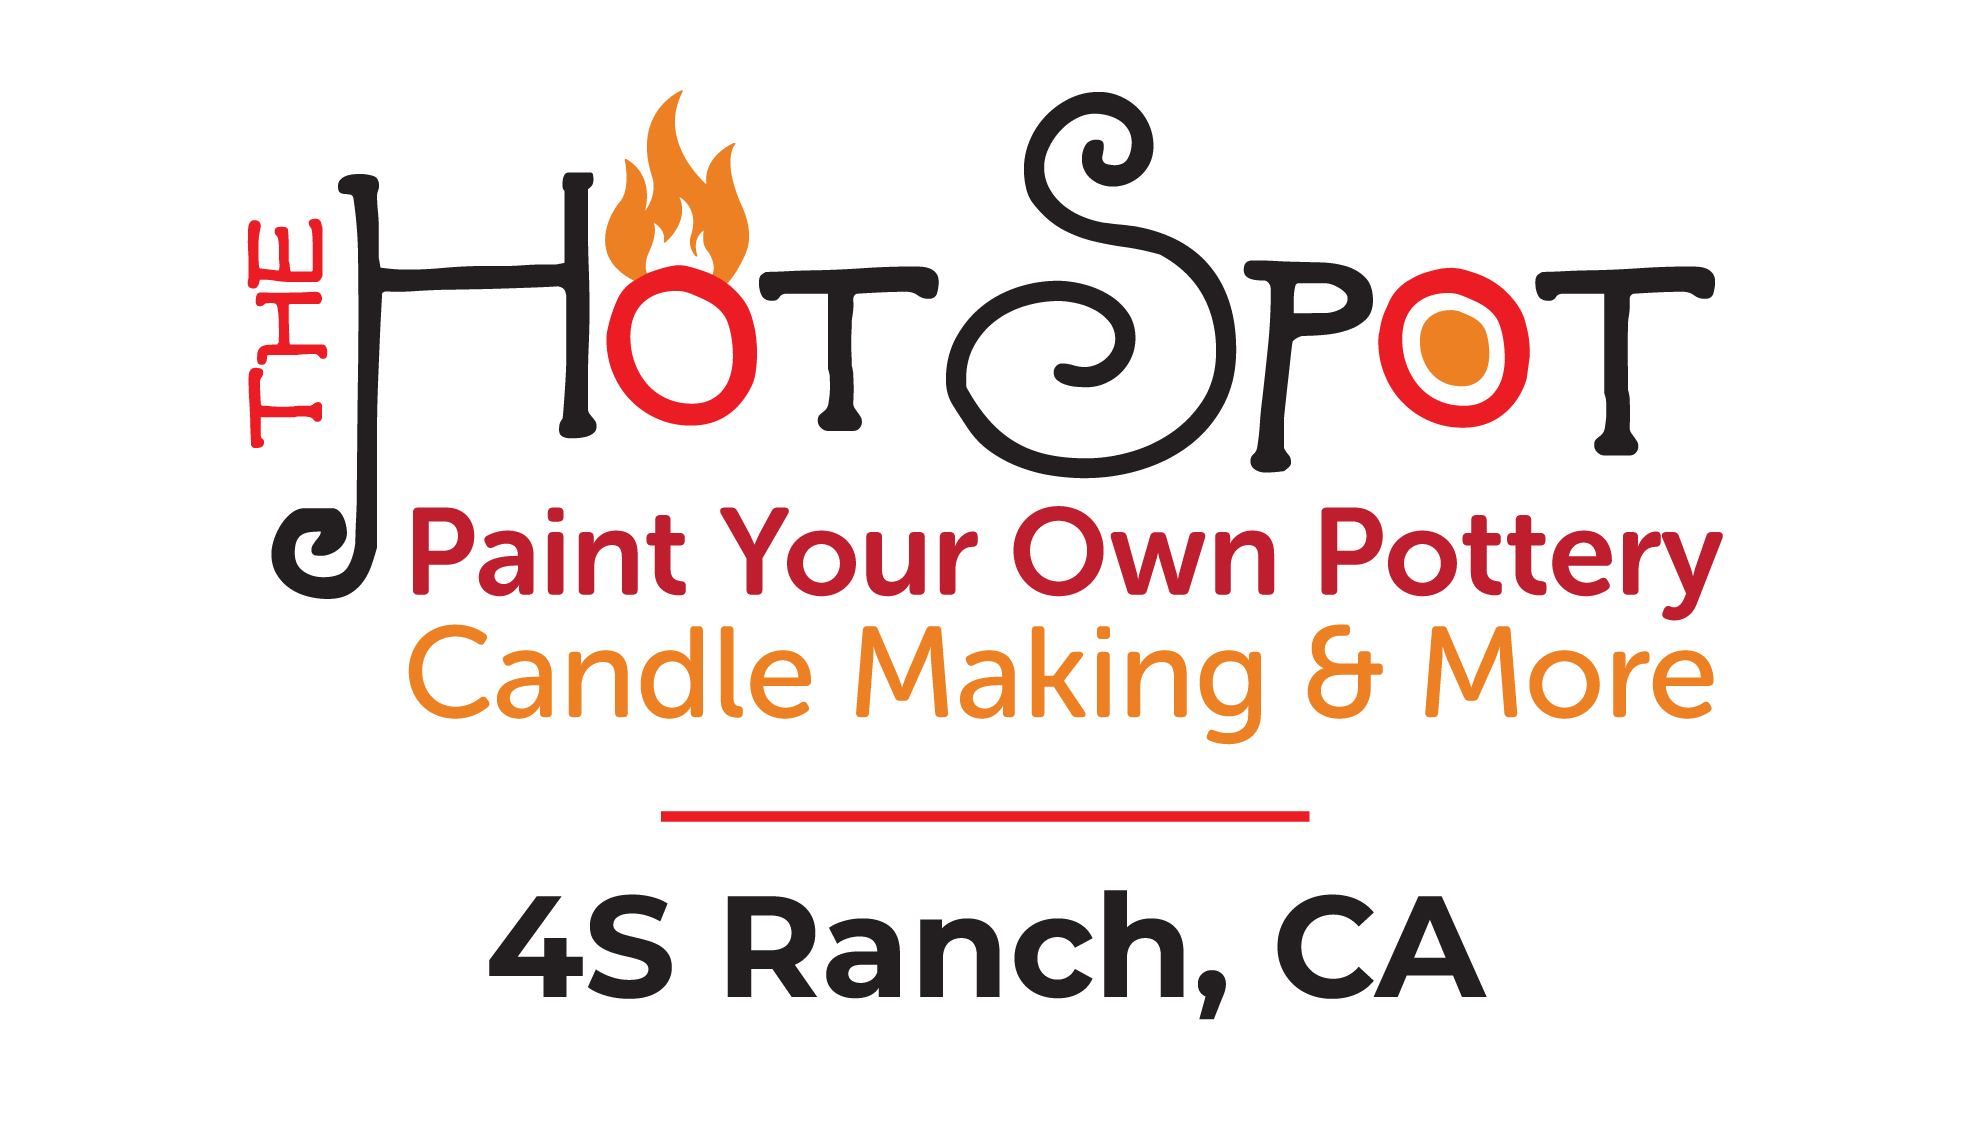 The Hot Spot Studios 4SRanch